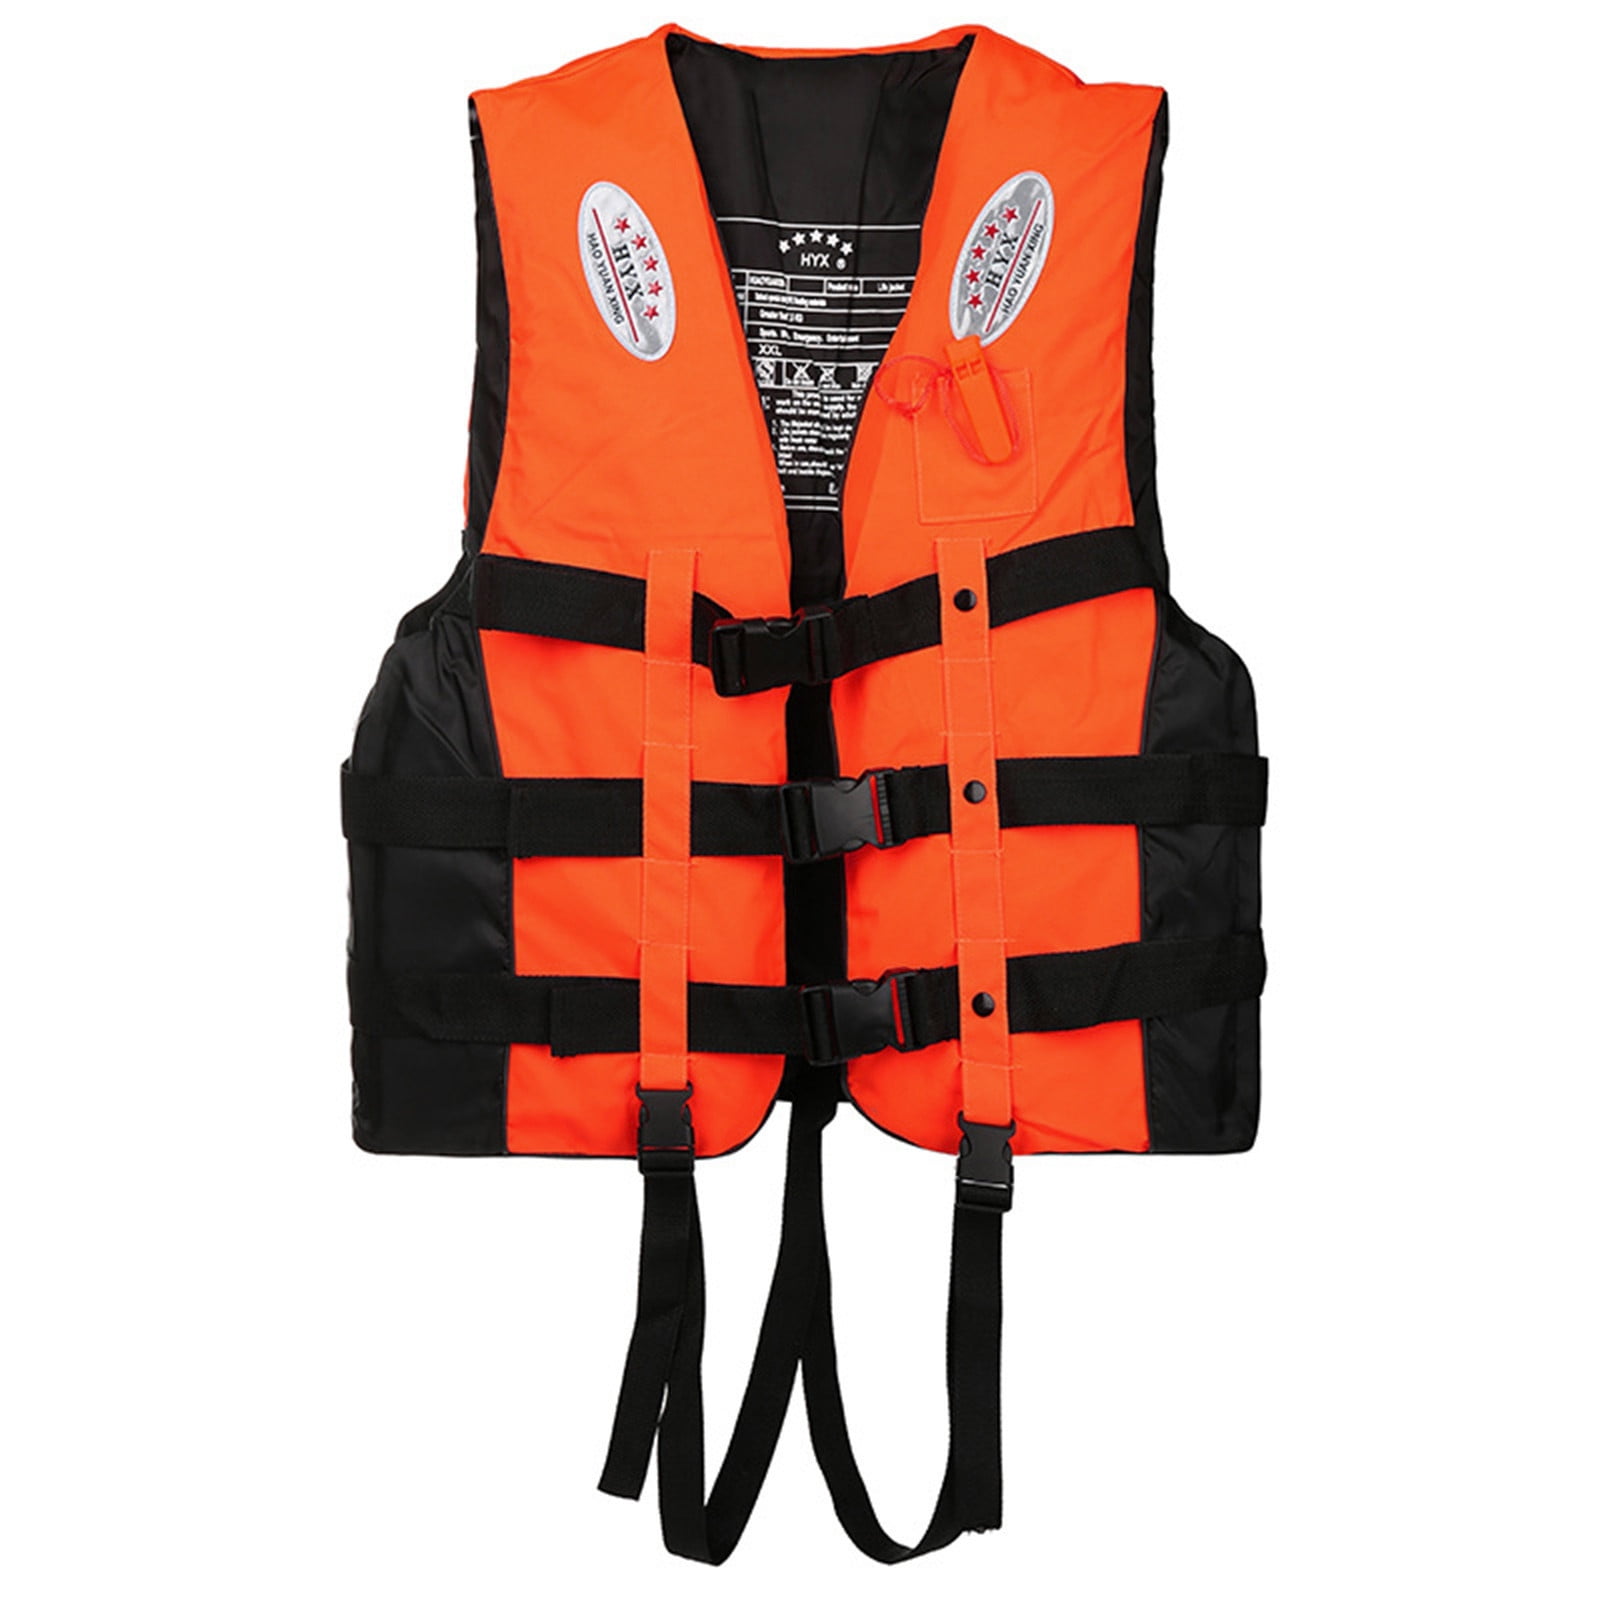 Adults Kids Lifesaving Vest Aid Sailing Sports Swimming Life Jacket S/M/L/XL/XXL 